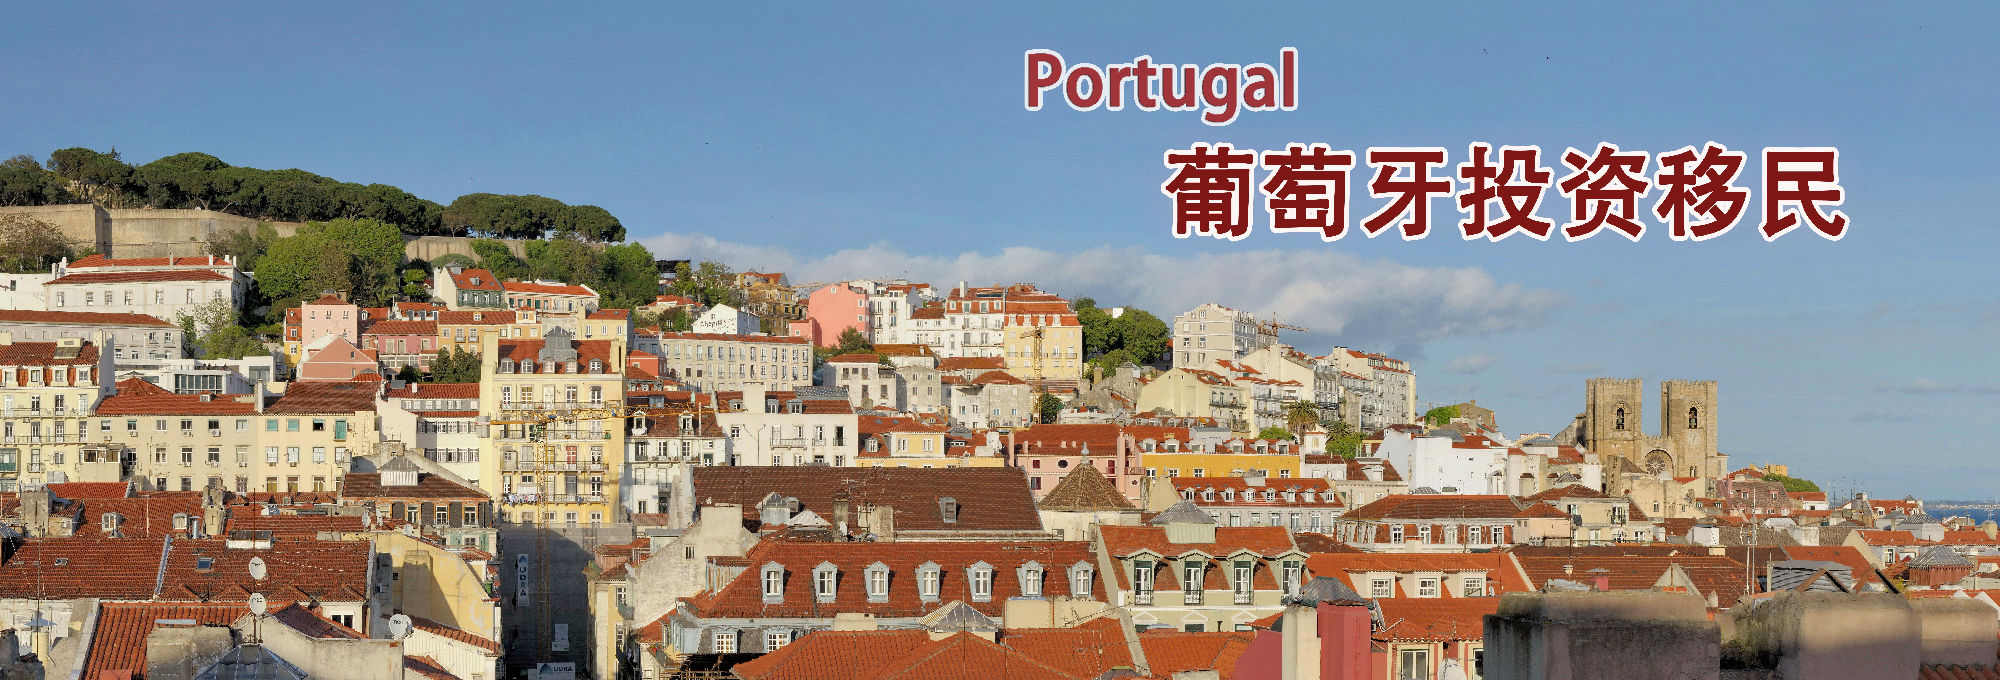 葡萄牙买房移民8月最新数据统计!2016年获批破千!